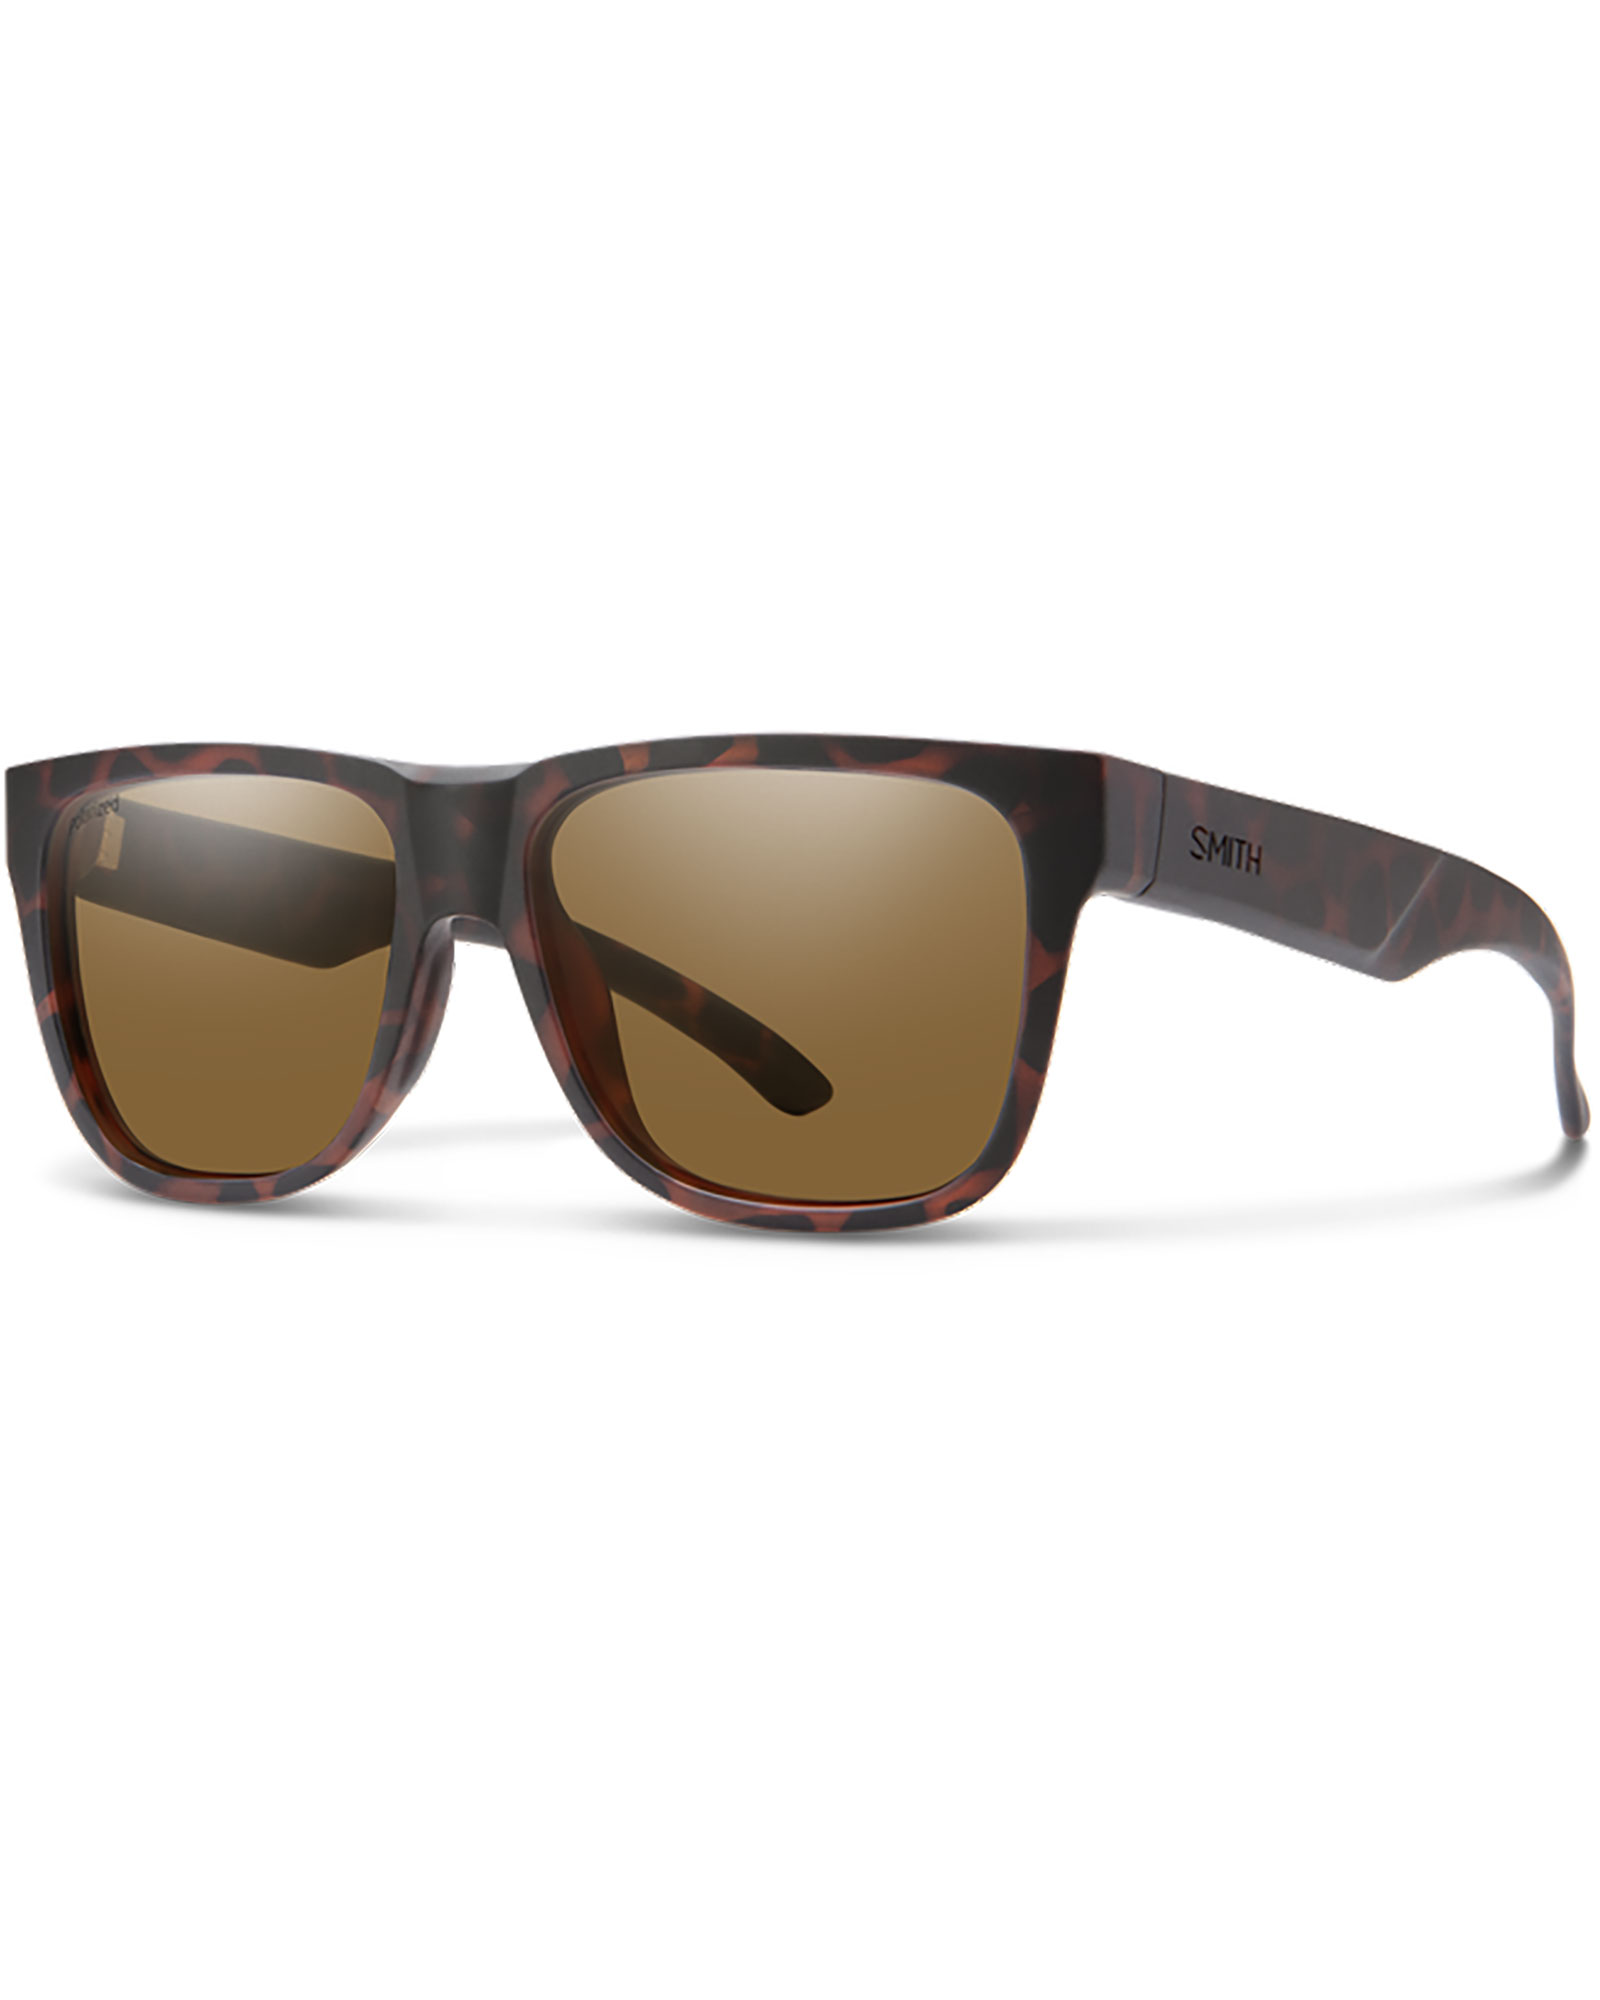 Smith Lowdown 2 Core Sunglasses - Matte Tortoise